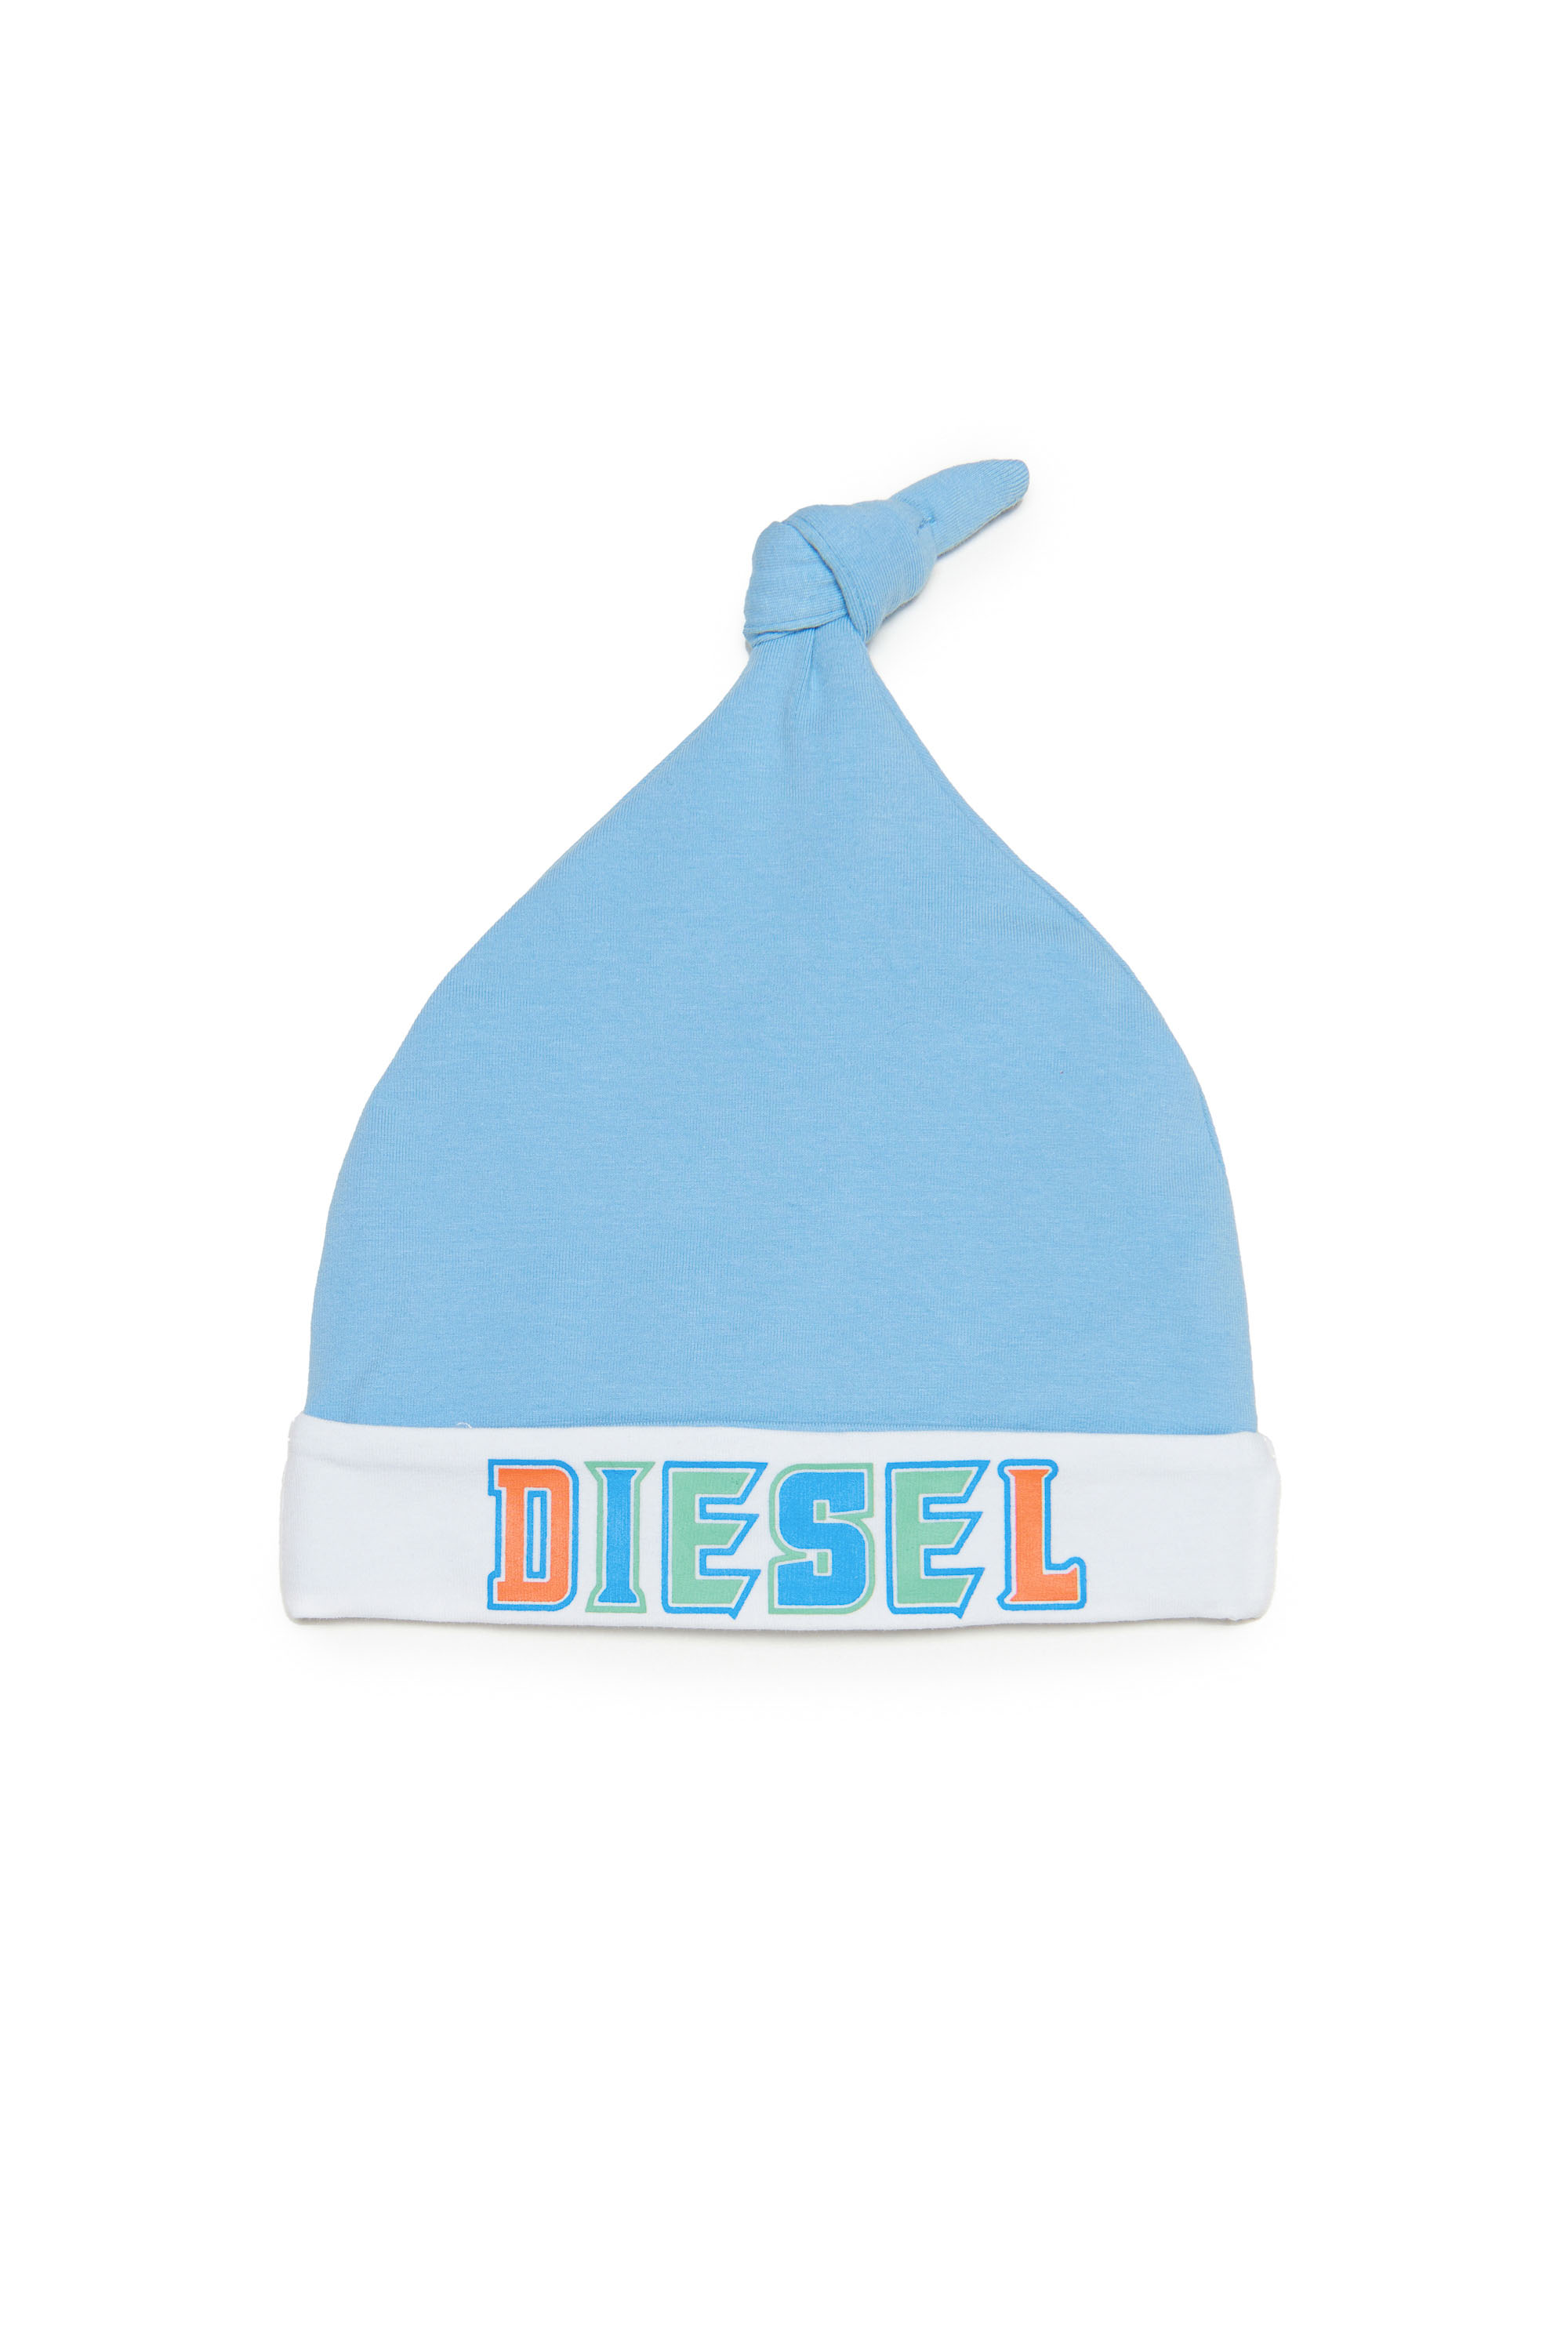 Diesel - FRIL-NB, Light Blue - Image 1